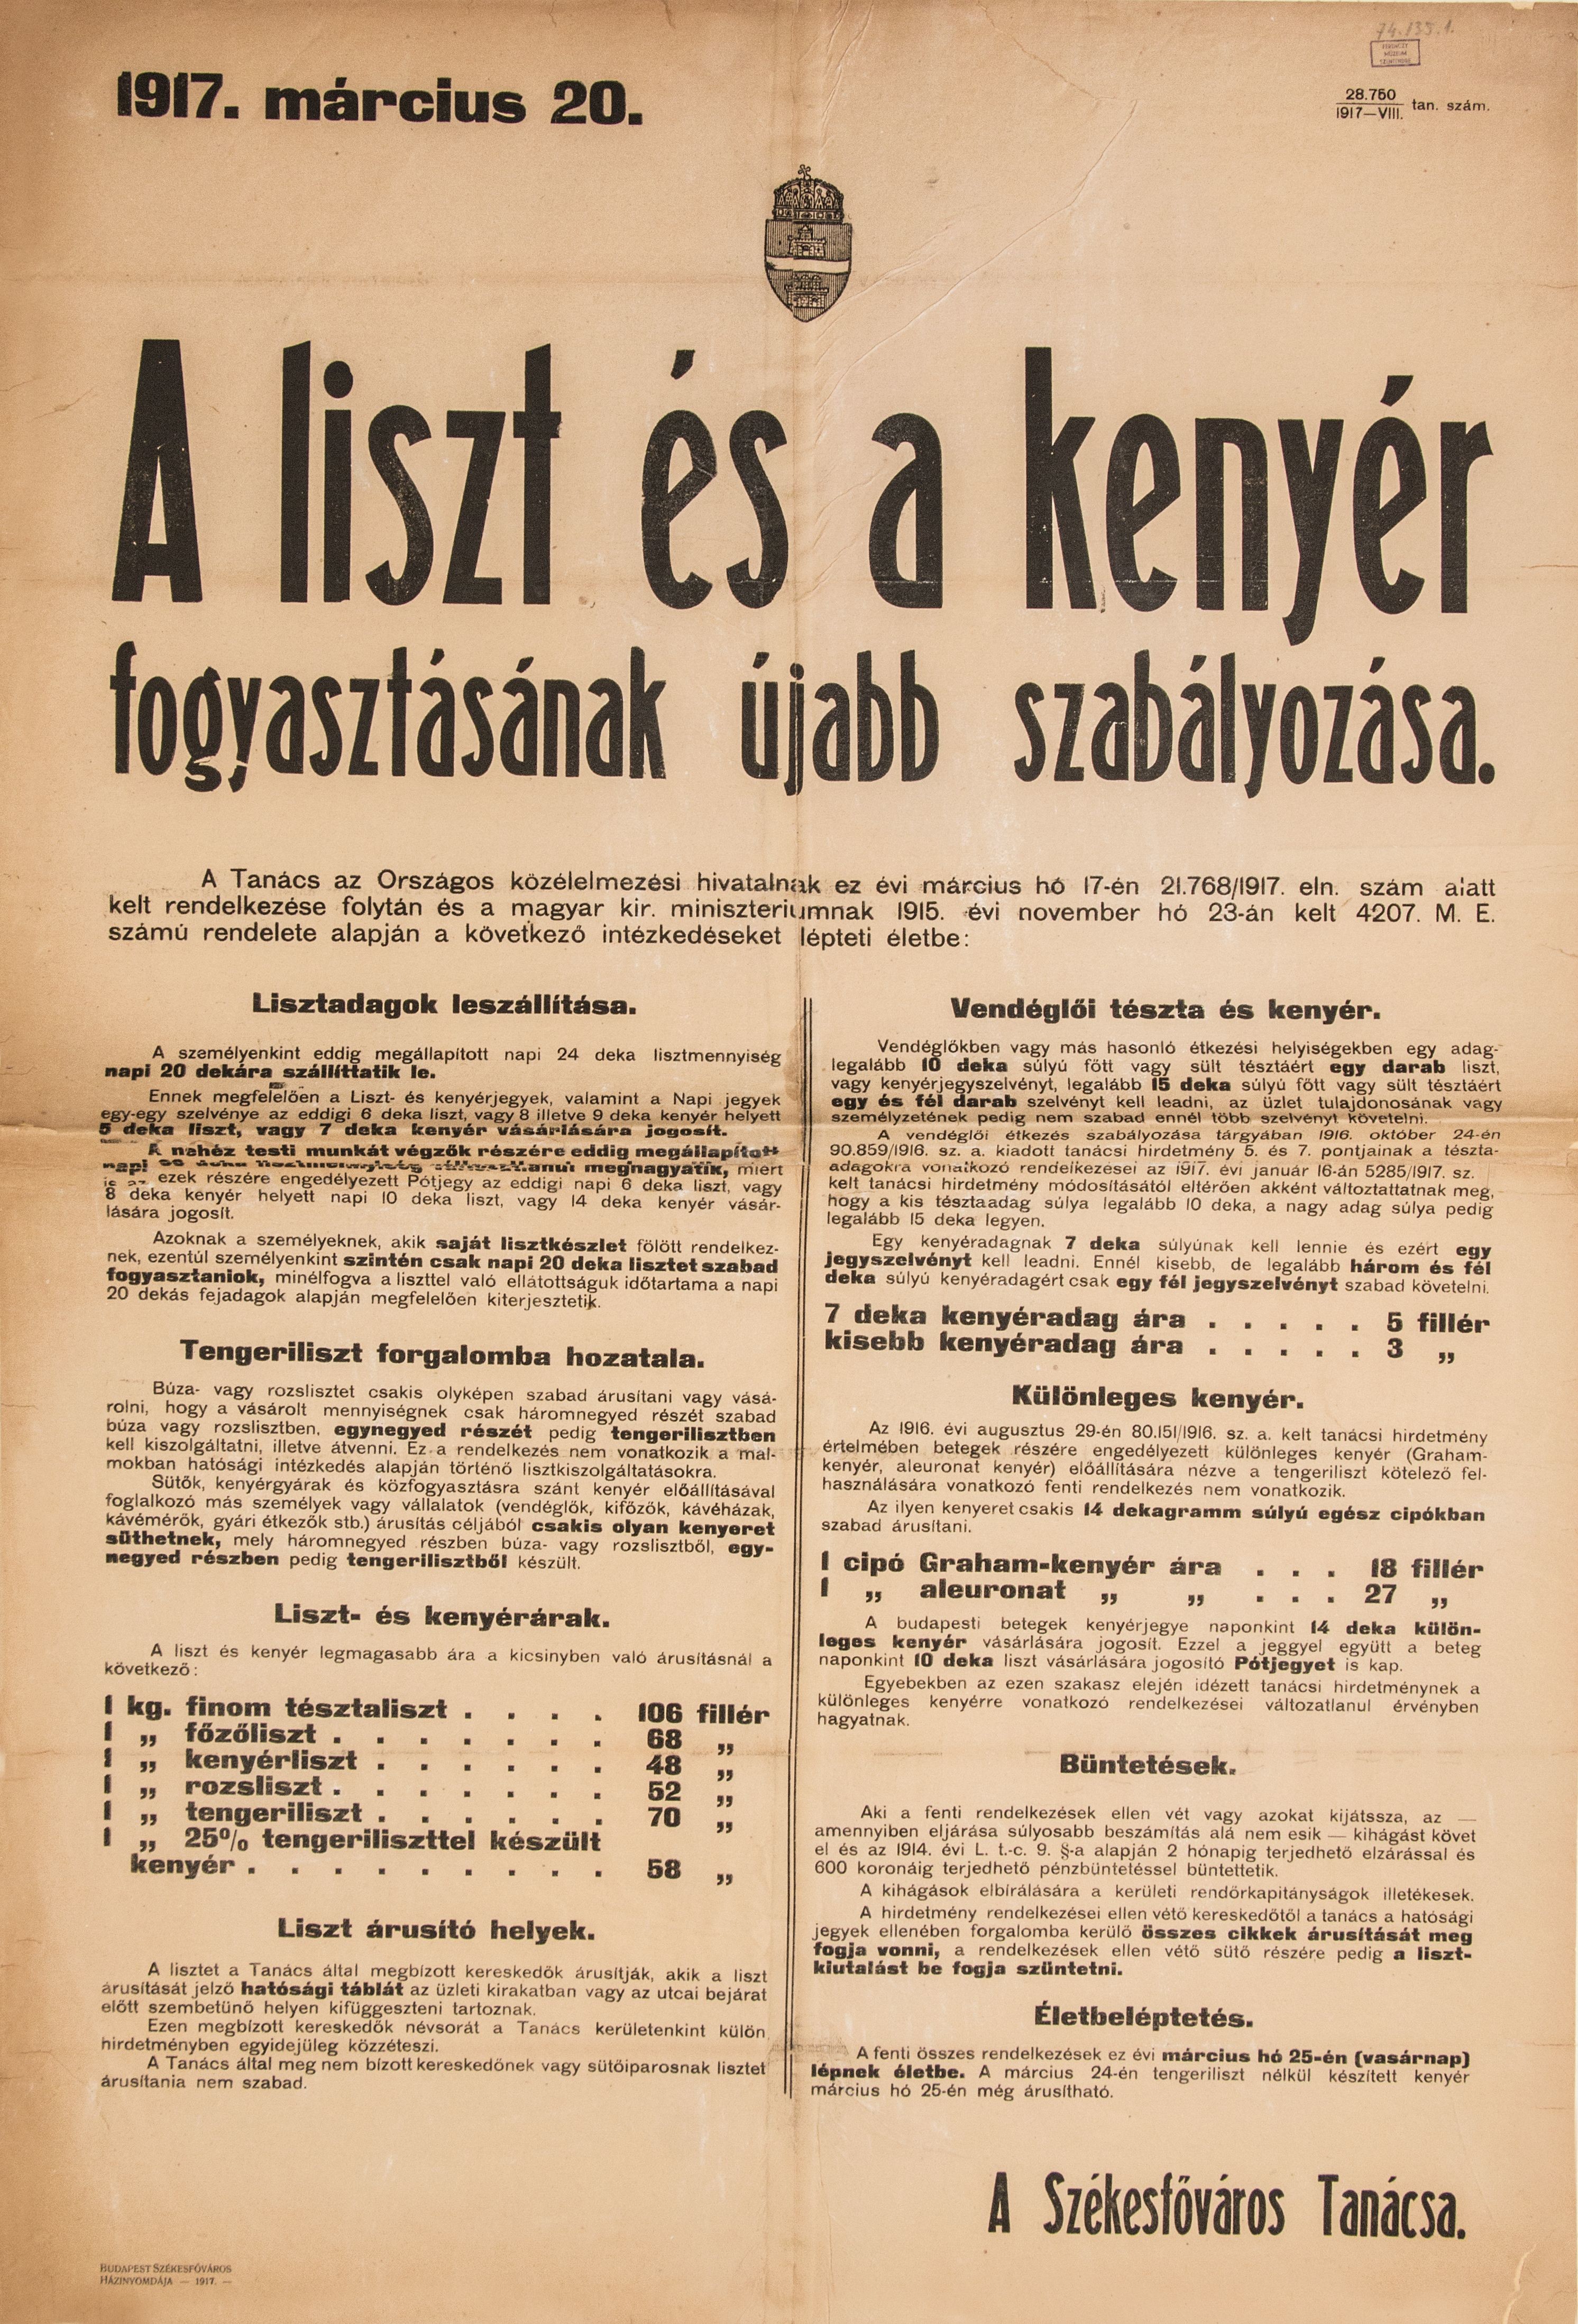 Liszt és kenyér fogyasztásának újabb szabályozása, 1917.03.20. (Ferenczy Múzeumi Centrum CC BY-NC-SA)